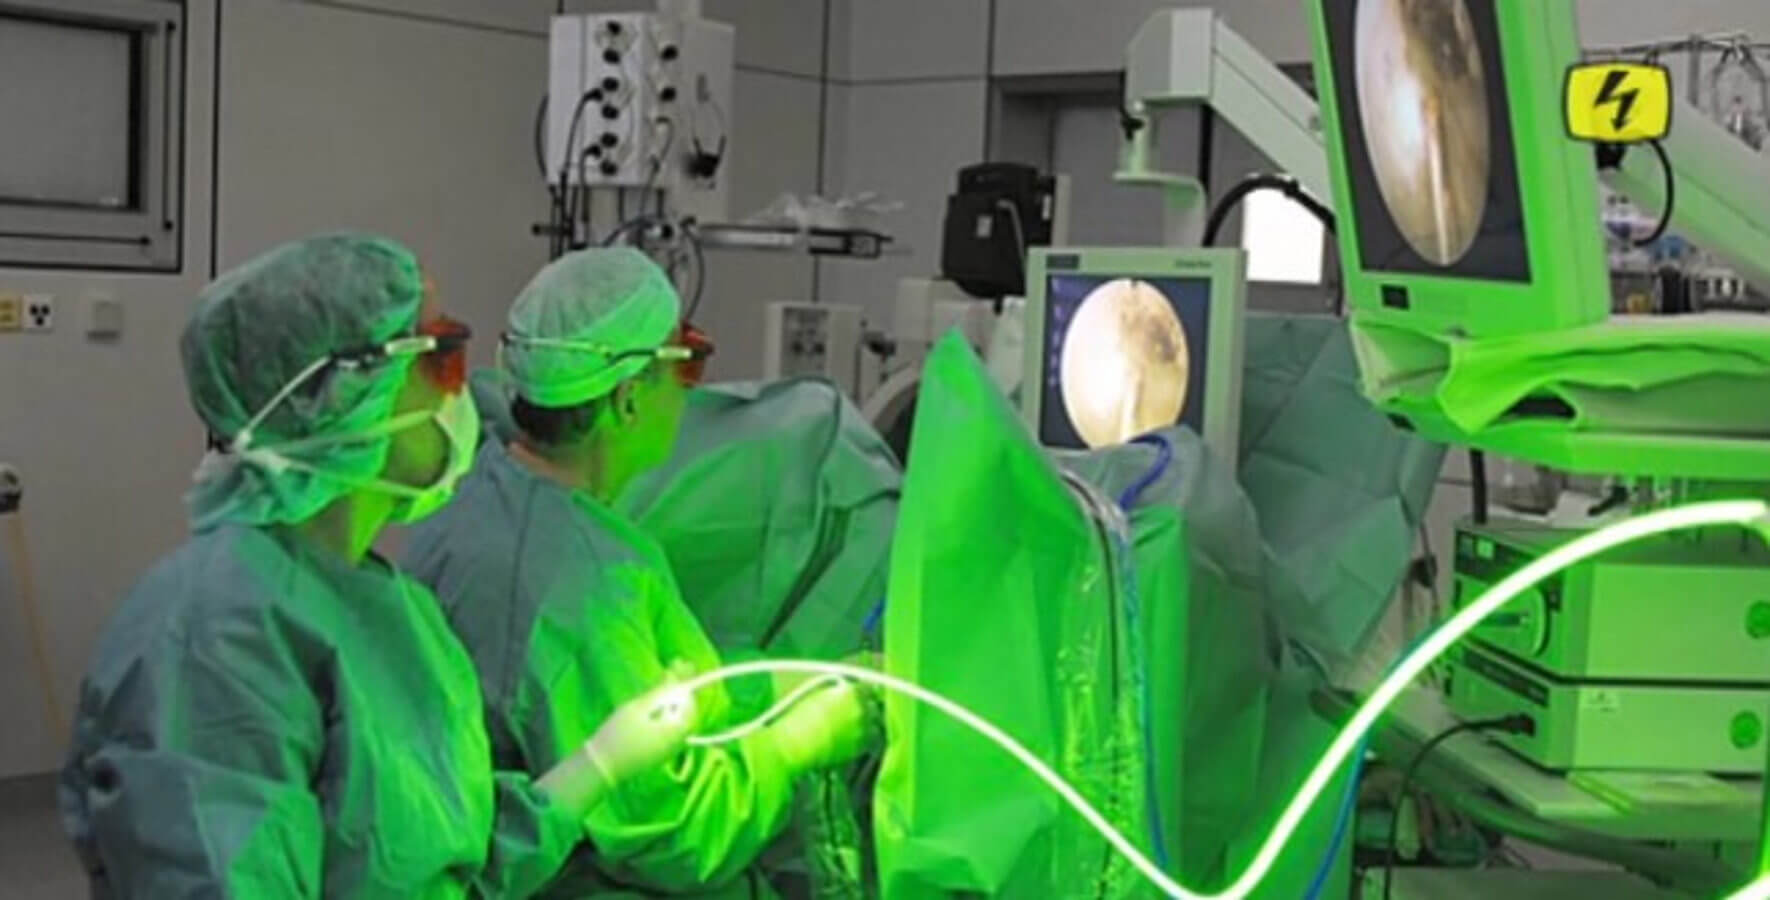 greenlight laser prostata kassenleistung tratamentul prostatitei în partea inferioară dar